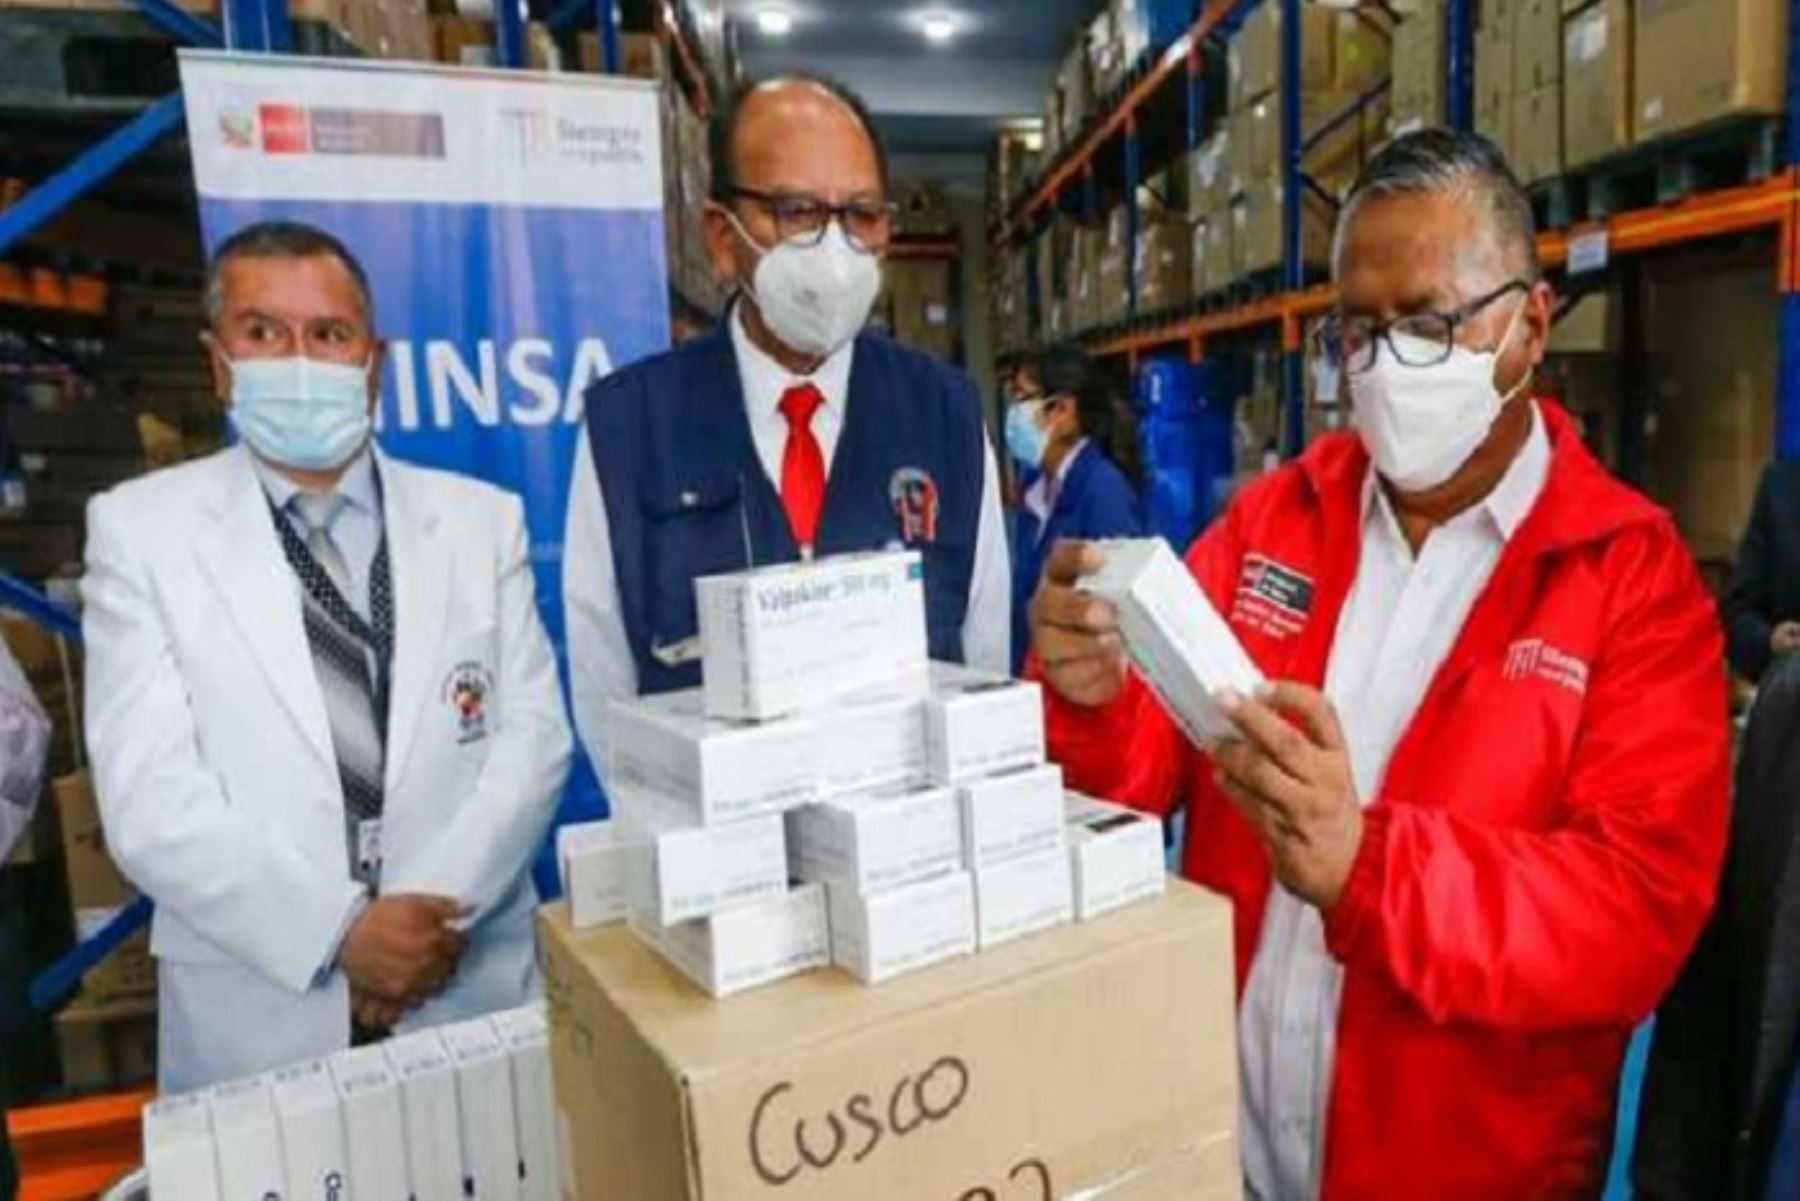 Los productos entregados están valorizados en más de 1.3 millones de soles para atención del covid-19 y otras enfermedades en la región Cusco.